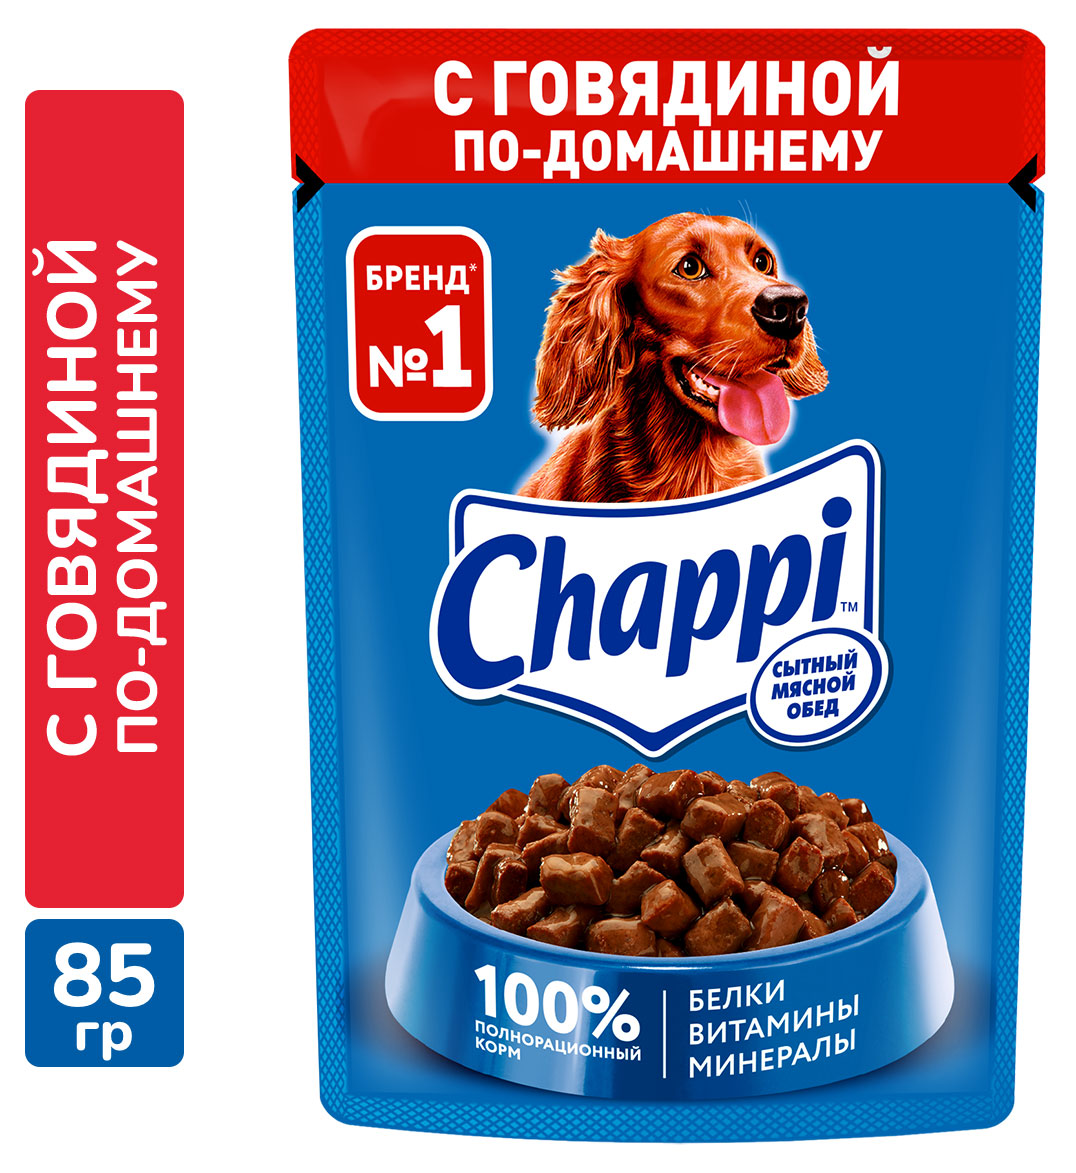 Chappi | Влажный корм для собак Chappi Сытный мясной обед говядина по-домашнему, 85 г